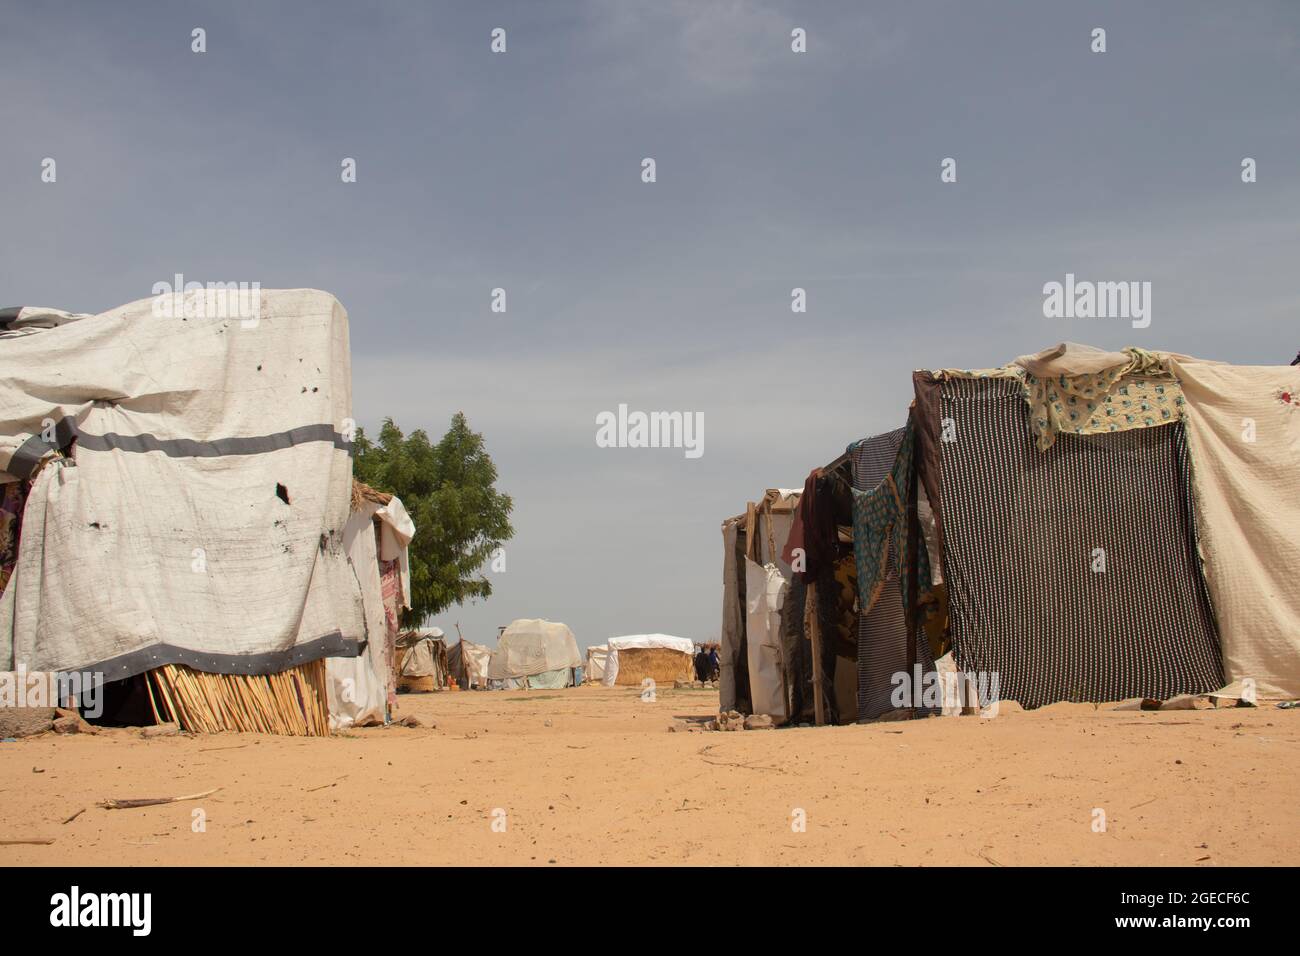 Camp de réfugiés en Afrique, région sub-saharienne. Personnes déplacées vivant dans de très mauvaises conditions Banque D'Images